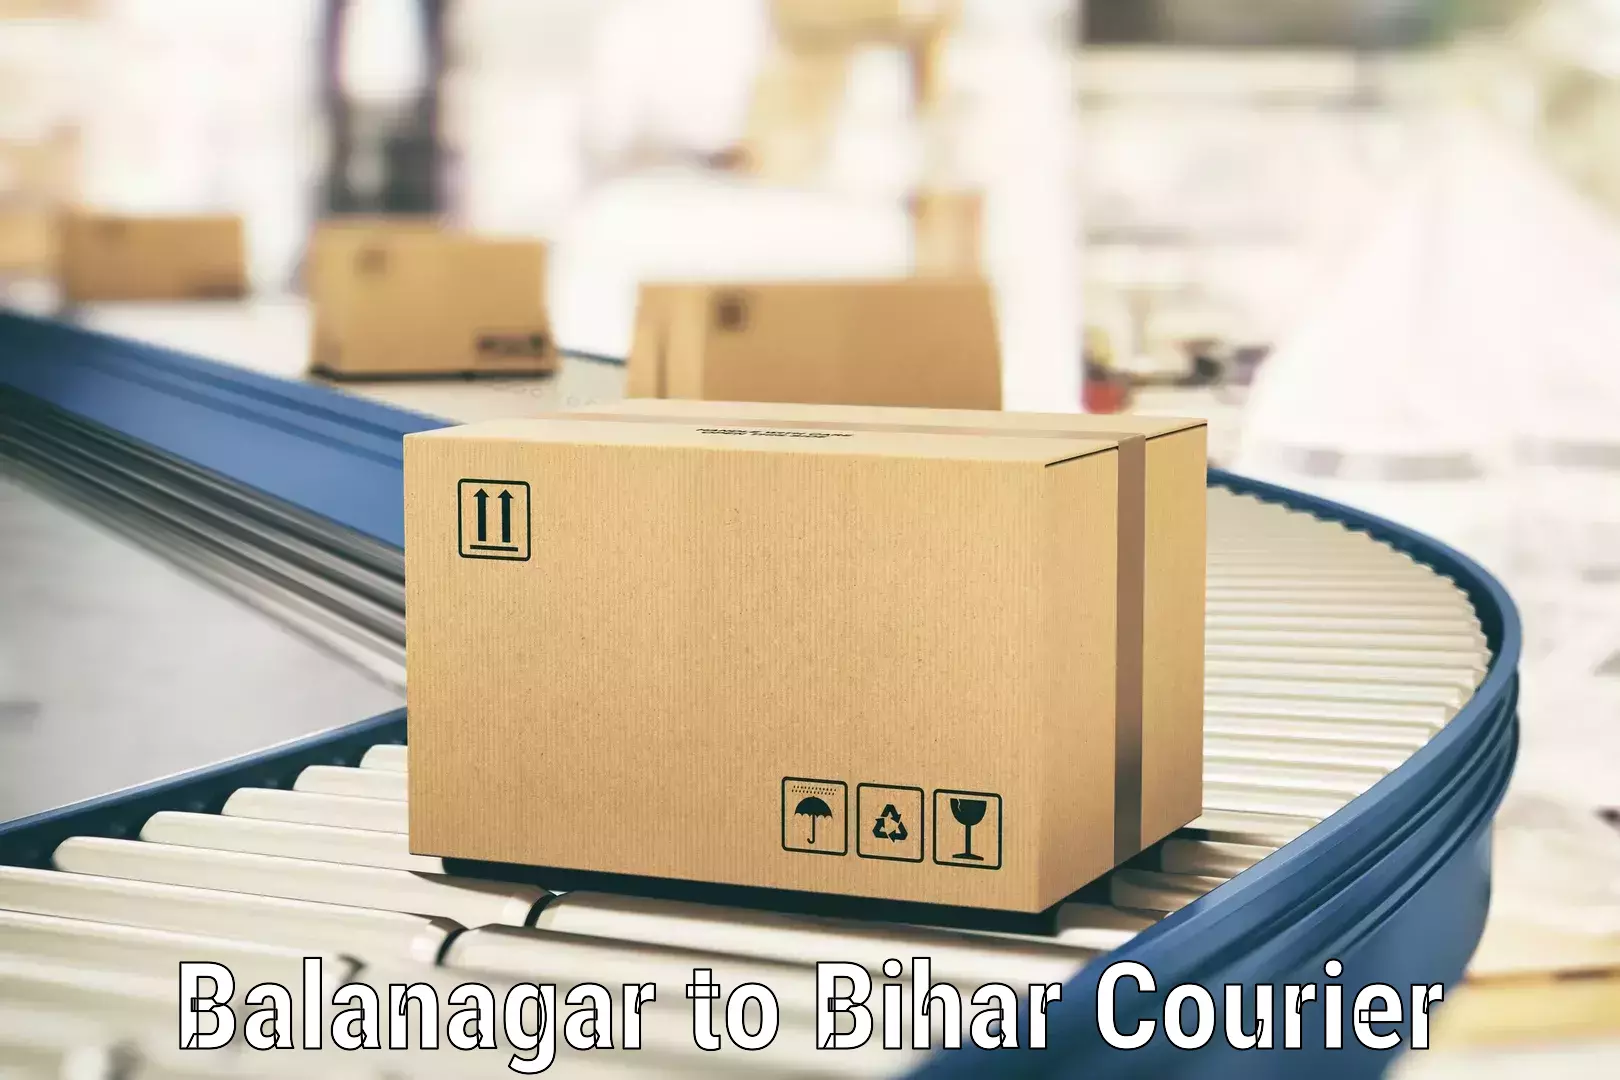 Advanced shipping services Balanagar to Nalanda